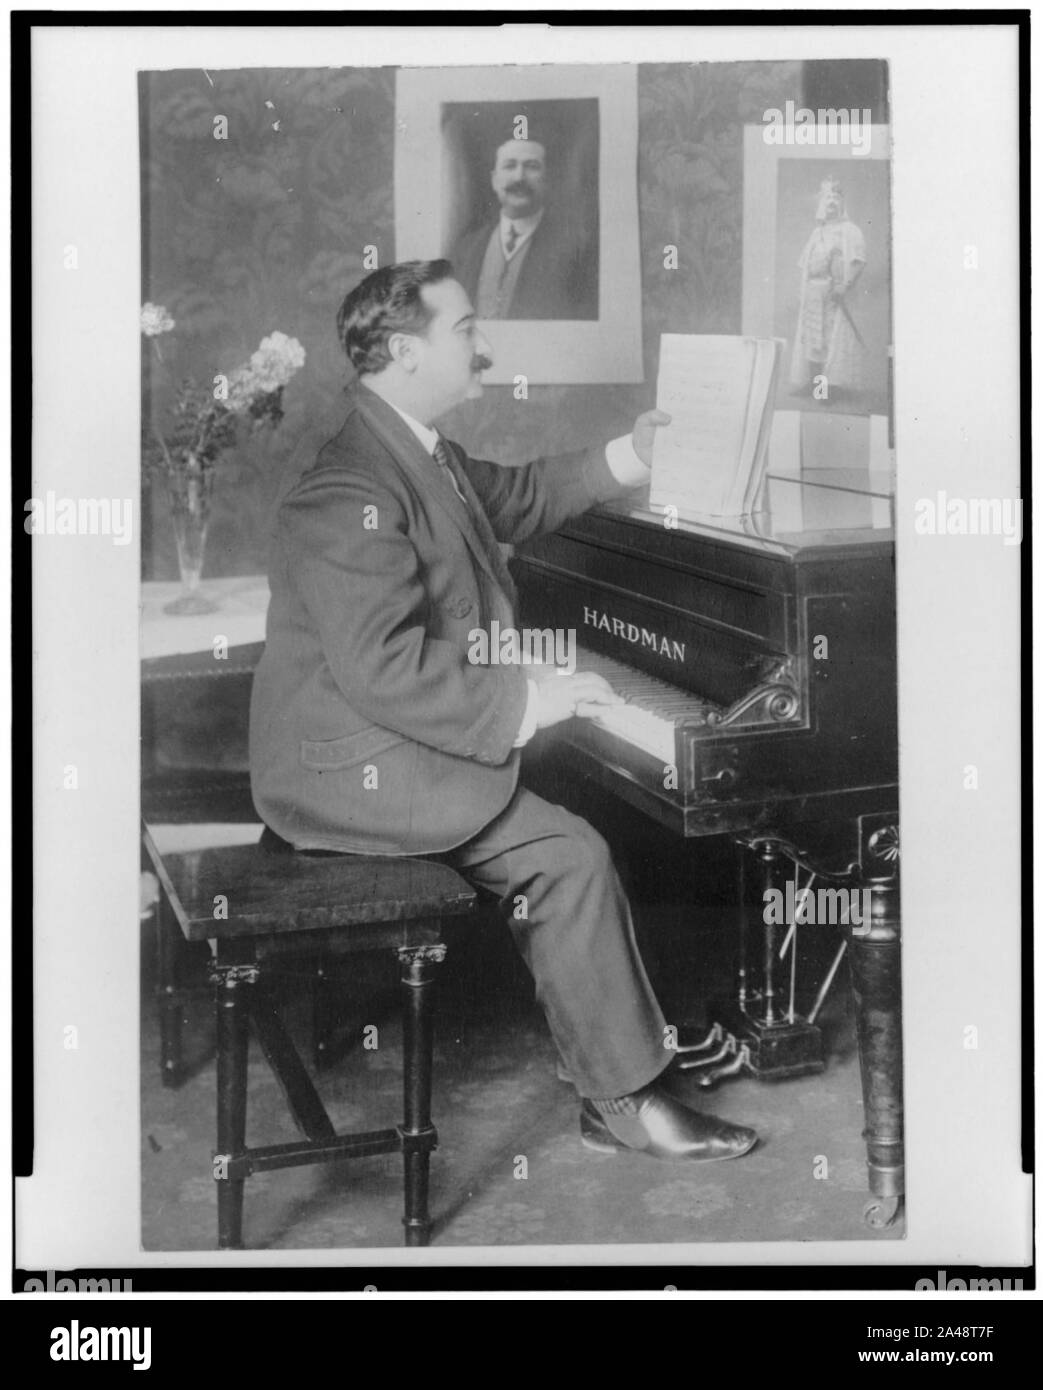 Florencio Constantino, ritratto a figura intera, seduto al pianoforte, rivolto verso destra Foto Stock